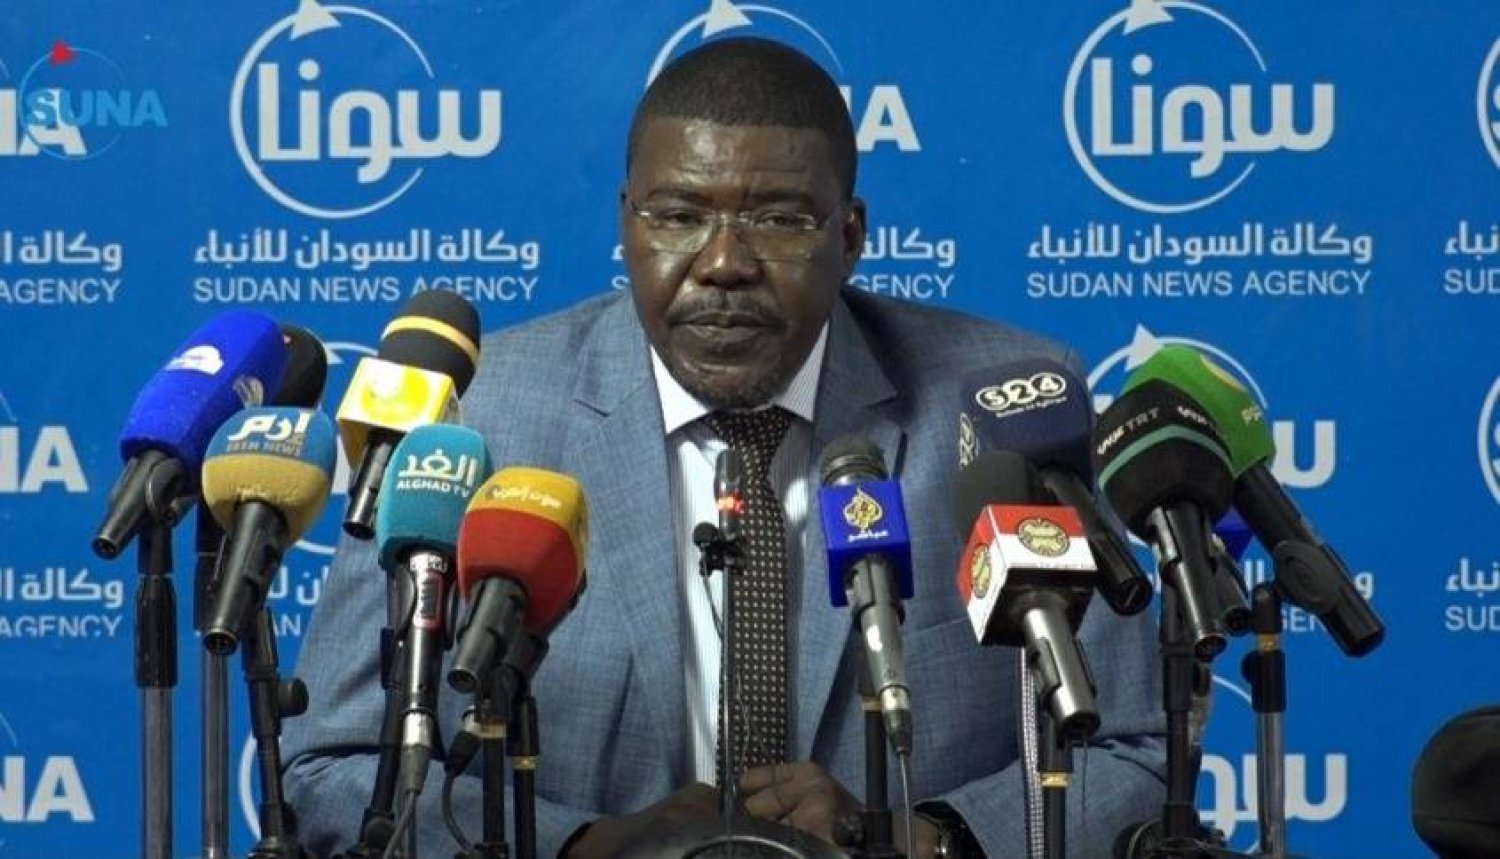 قوى تحرير السودان» تعفي رئيسها وتتهمه بالخيانة العظمى